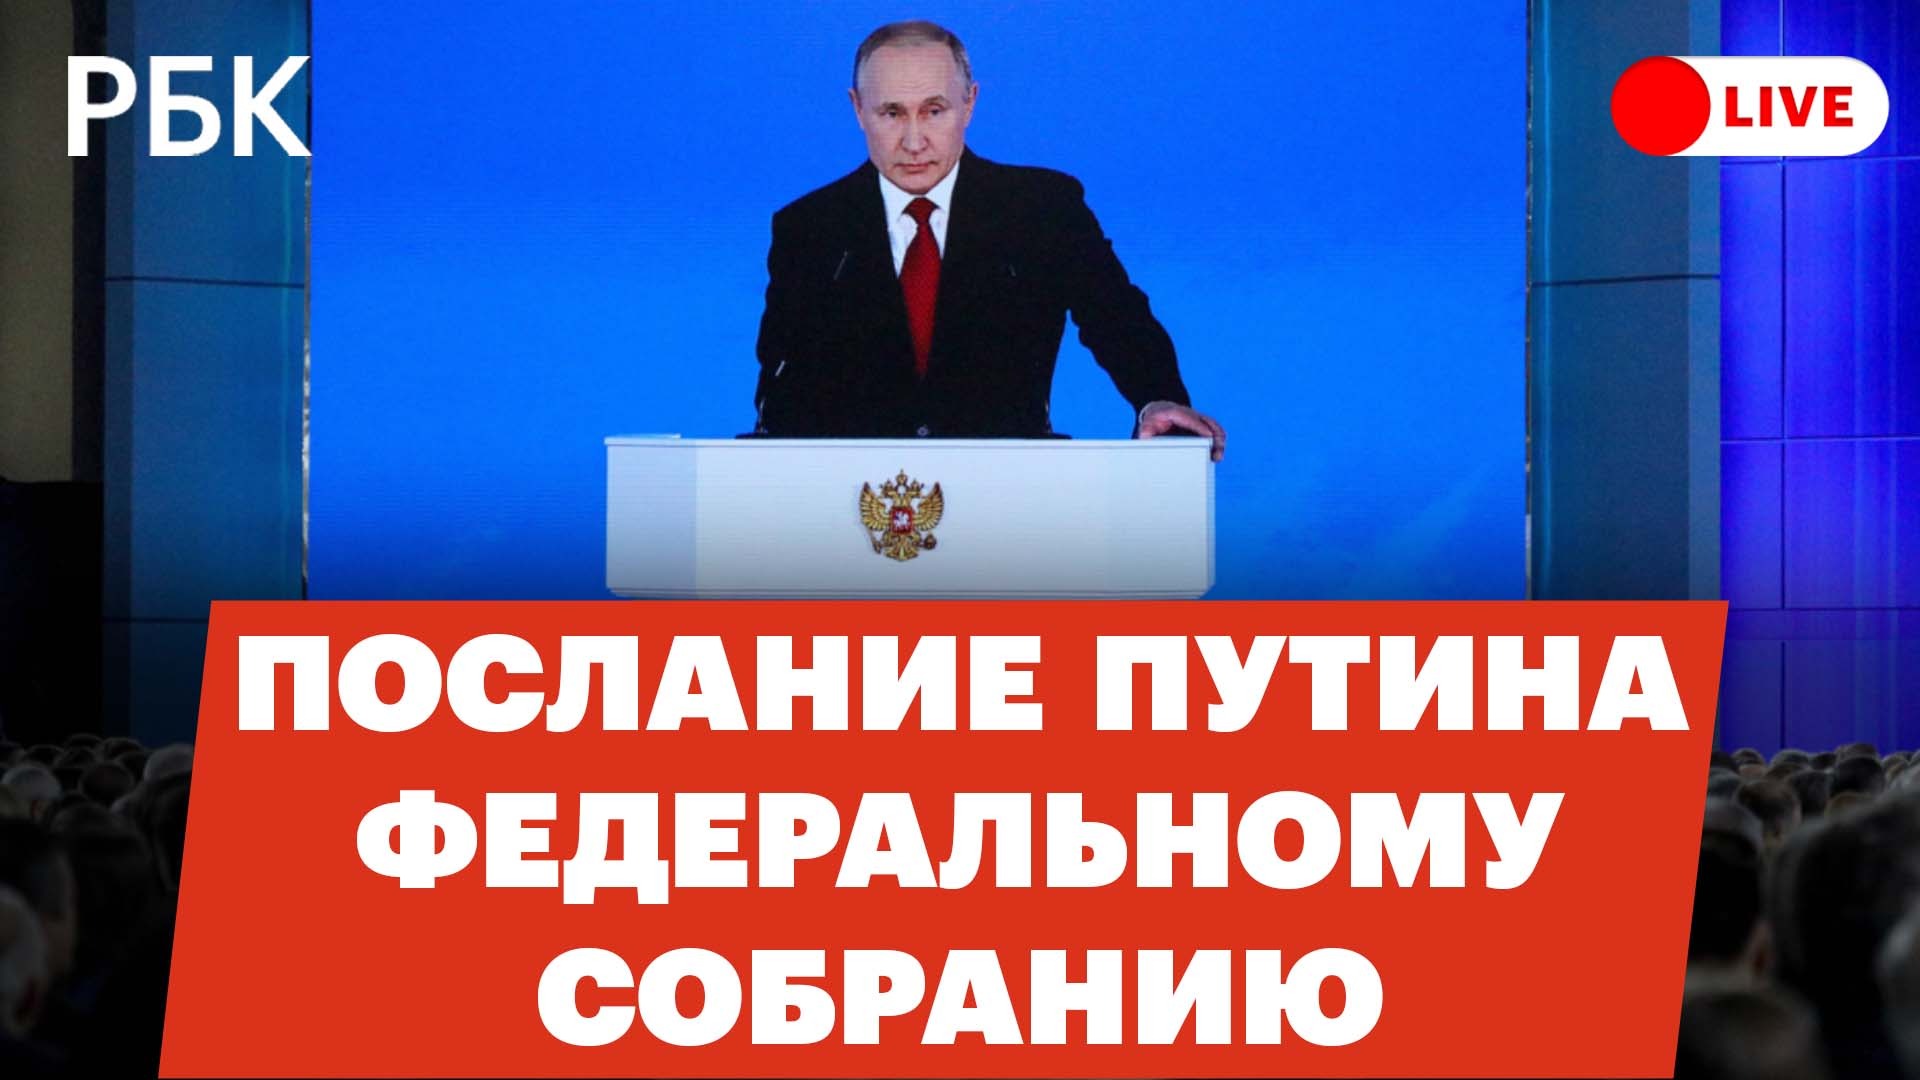 Послание Владимира Путина Федеральному собранию. Прямая трансляция